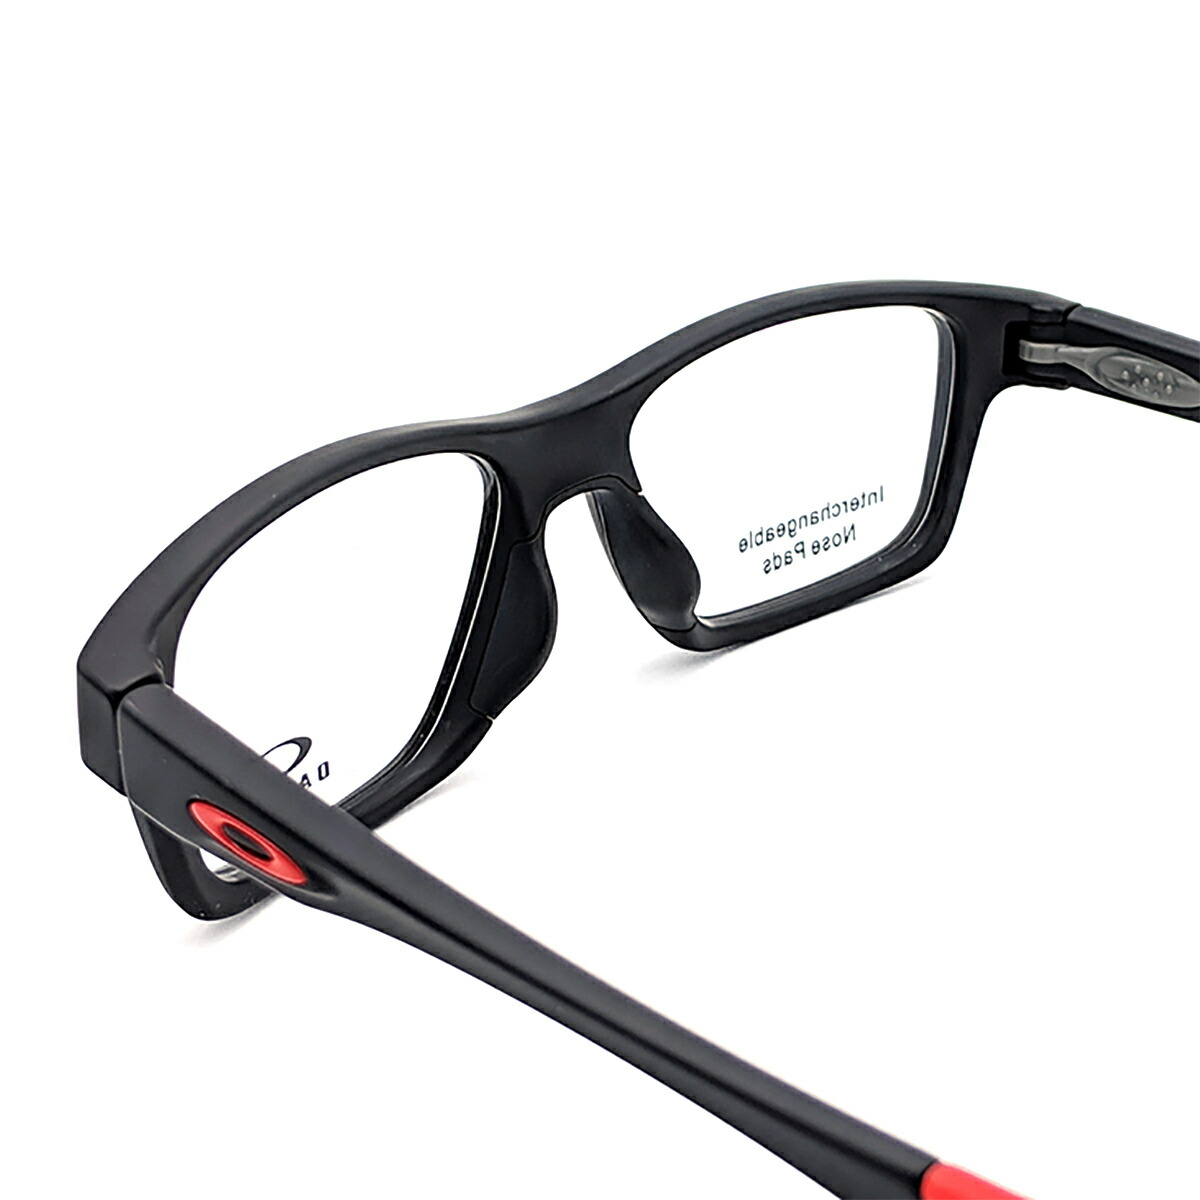 即納 最大半額 楽天市場 Oakley Crosslink High Power オークリー クロスリンク ハイパワー メガネ フレーム Ox8117 01 52サイズ 度付き対応 近視 強度 度数 強い スポーツ オプサルミック 眼鏡 フレーム 軽い 軽量 丈夫 男性 メンズ 女性 レディース 送料無料